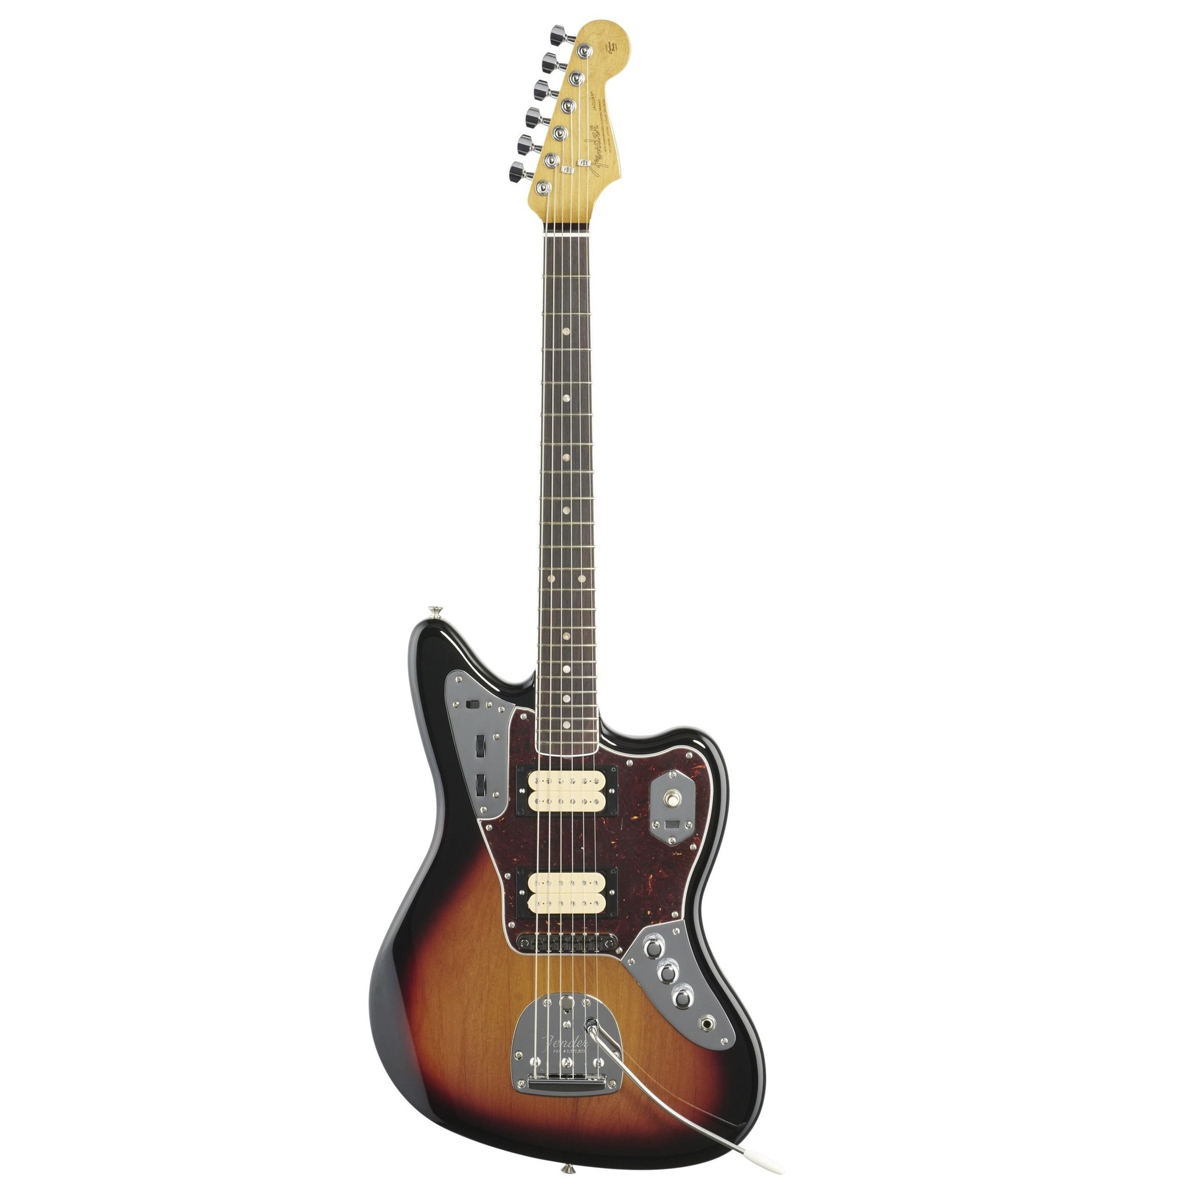 Электрогитара Fender Kurt Cobain Jaguar 3-Color Sunburst MX22156398, коричневый набор курт кобейн и nirvana фигурка уточка тёмный герой